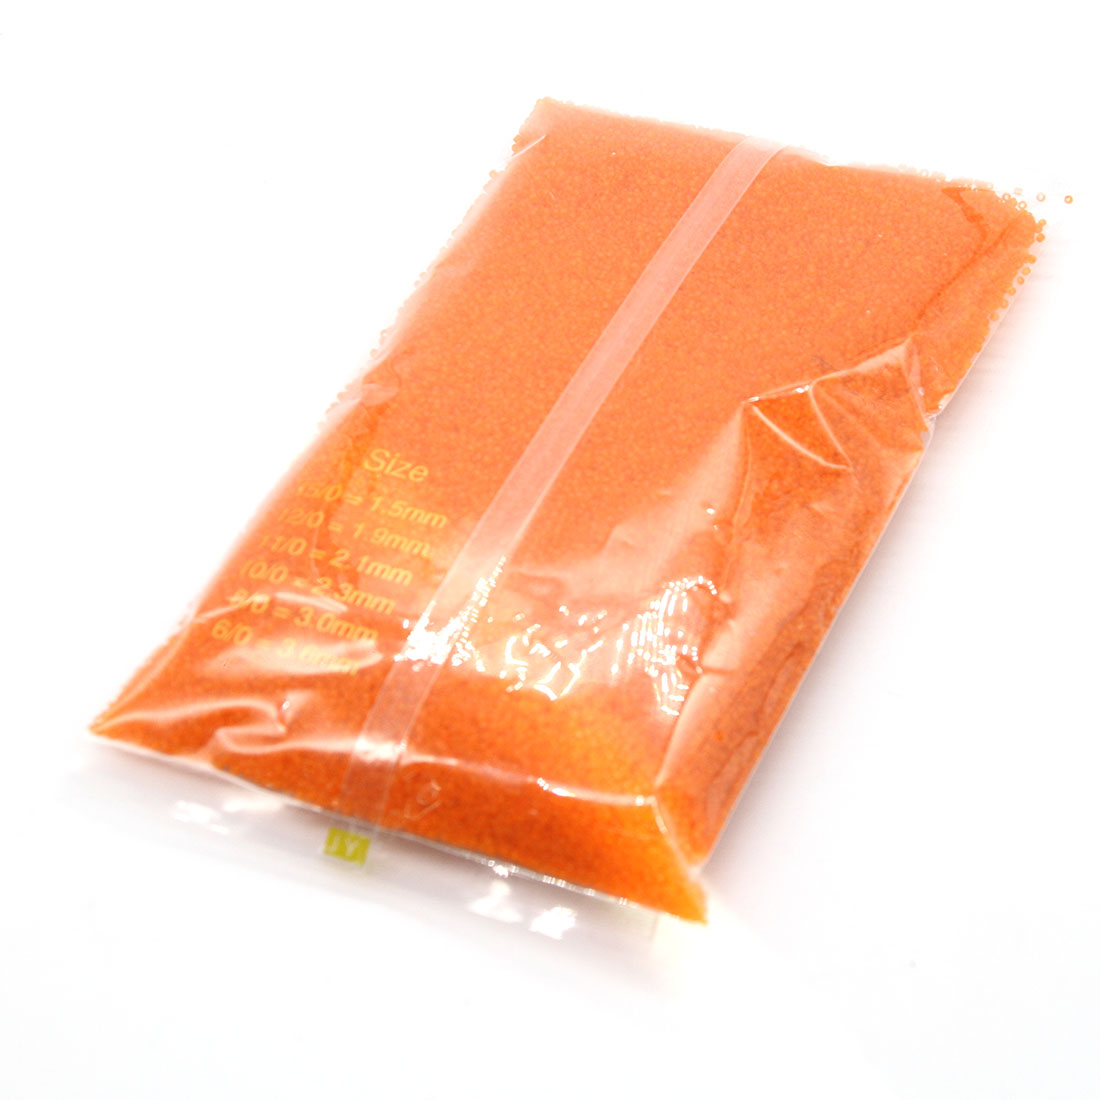 Light orange 3mm 10,000 packs